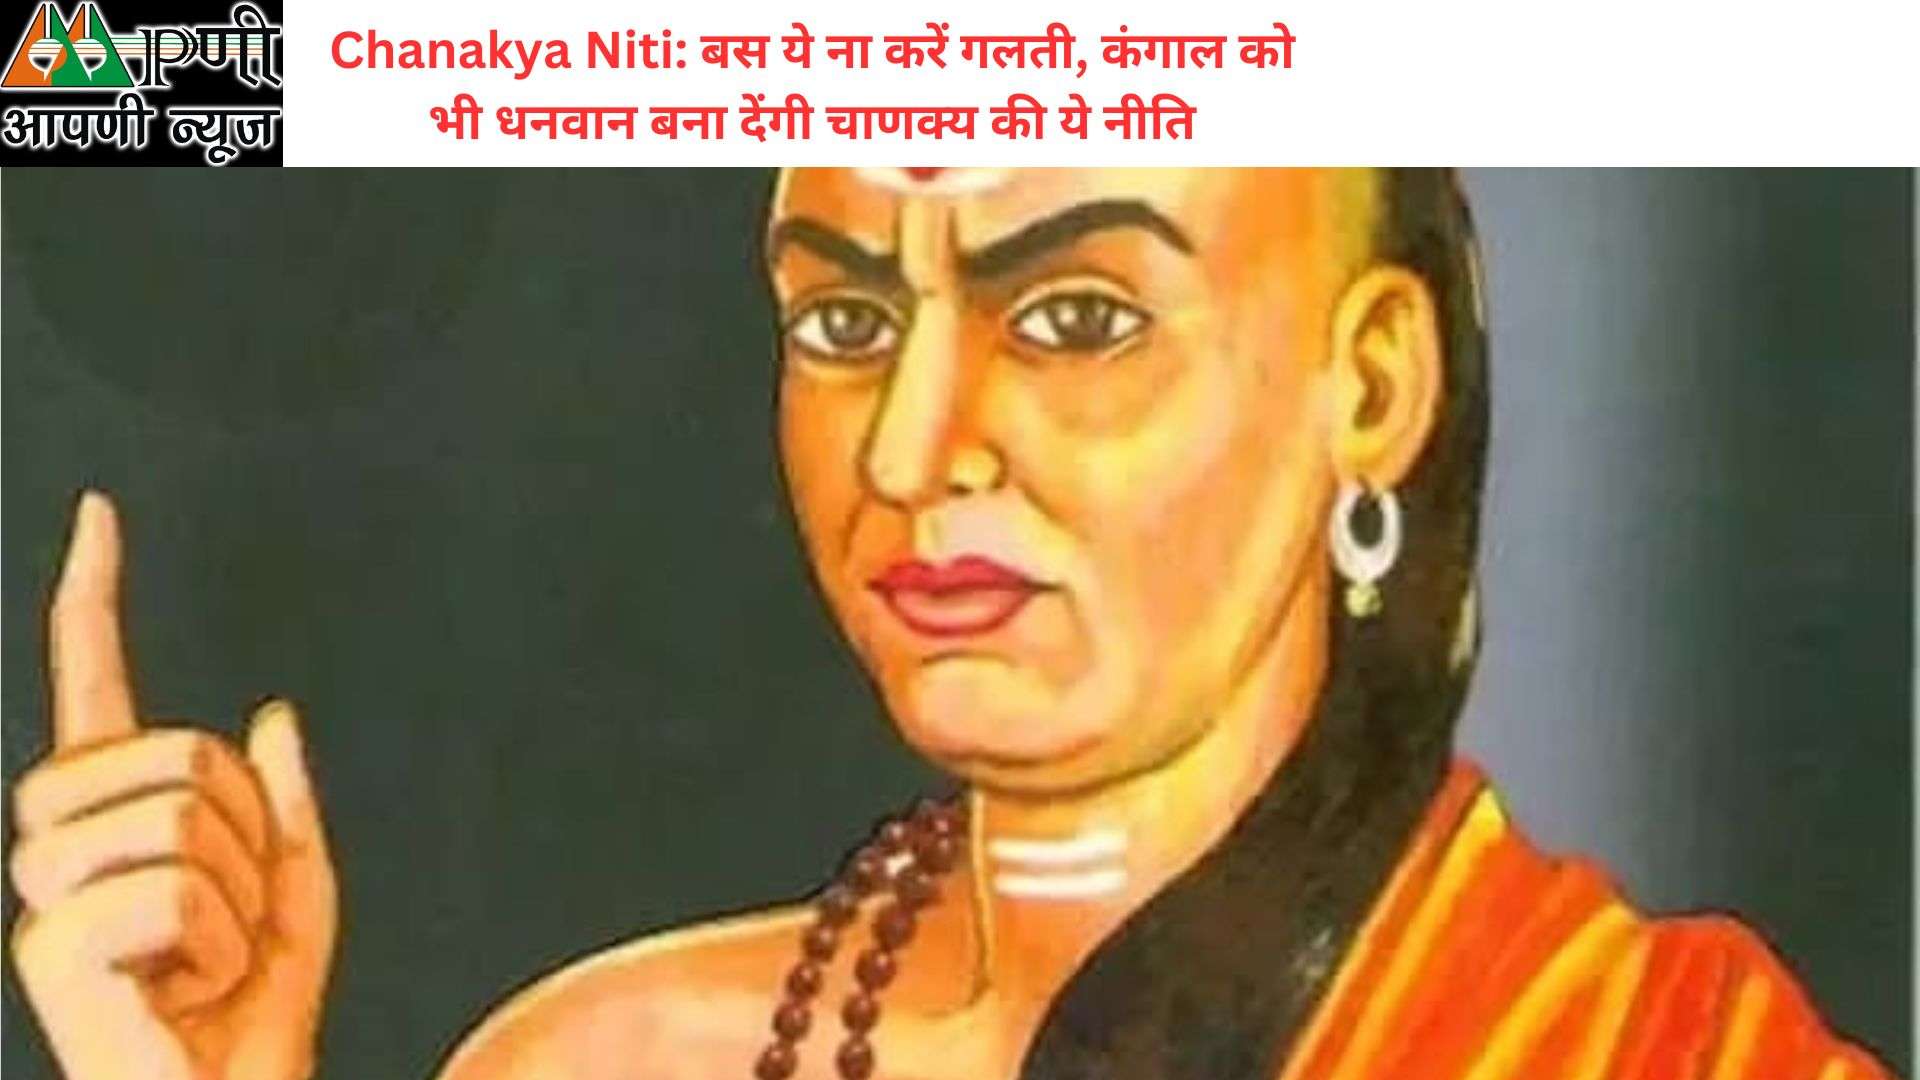 Chanakya Niti: बस ये ना करें गलती, कंगाल को भी धनवान बना देंगी चाणक्य की ये नीति